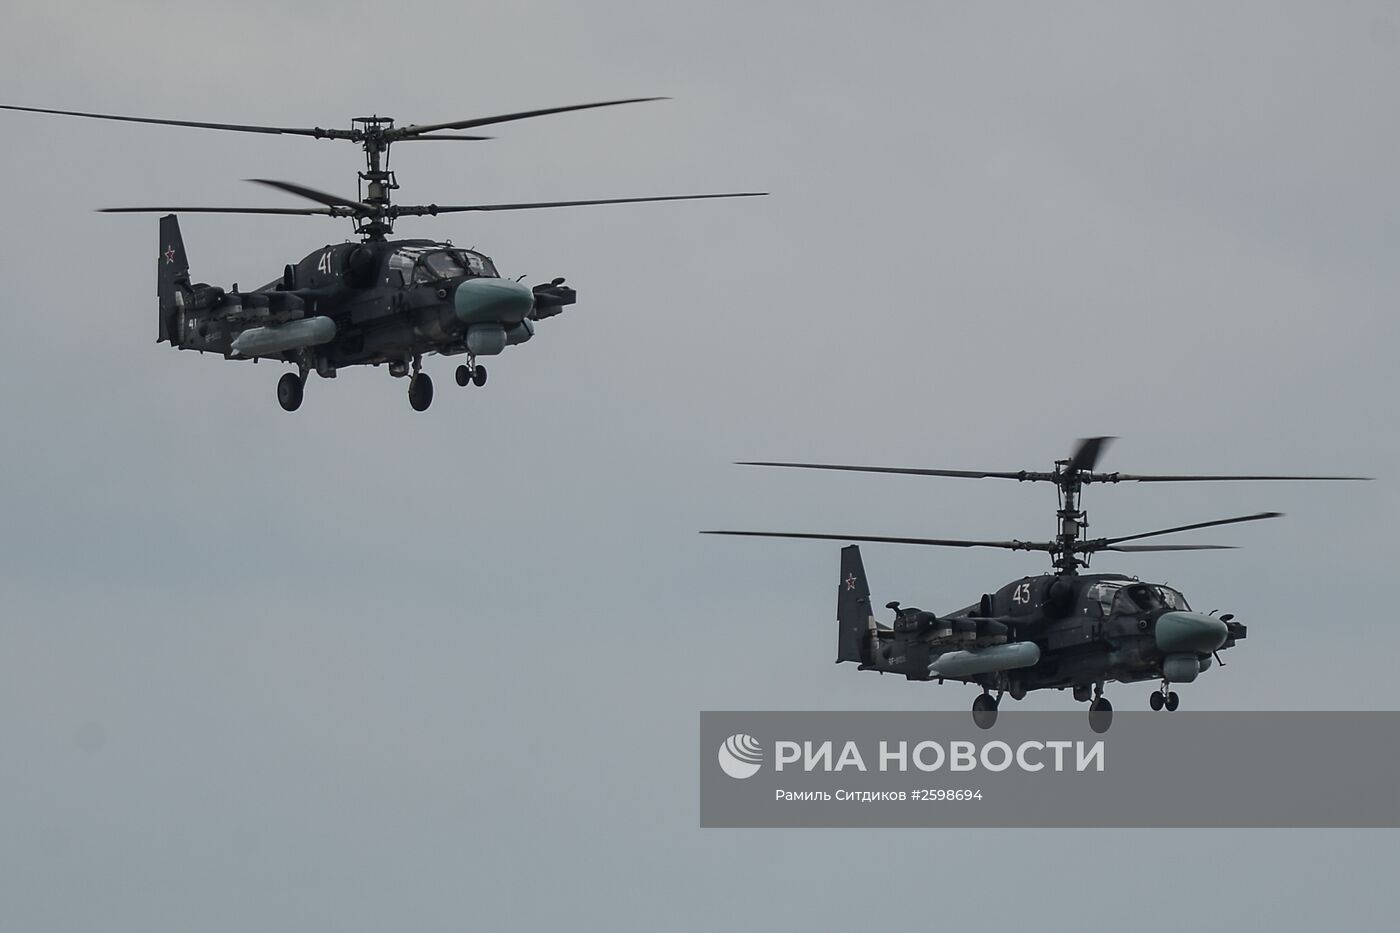 Прибытие авиационной техники для участия в тренировках воздушной части военного парада на Красной площади